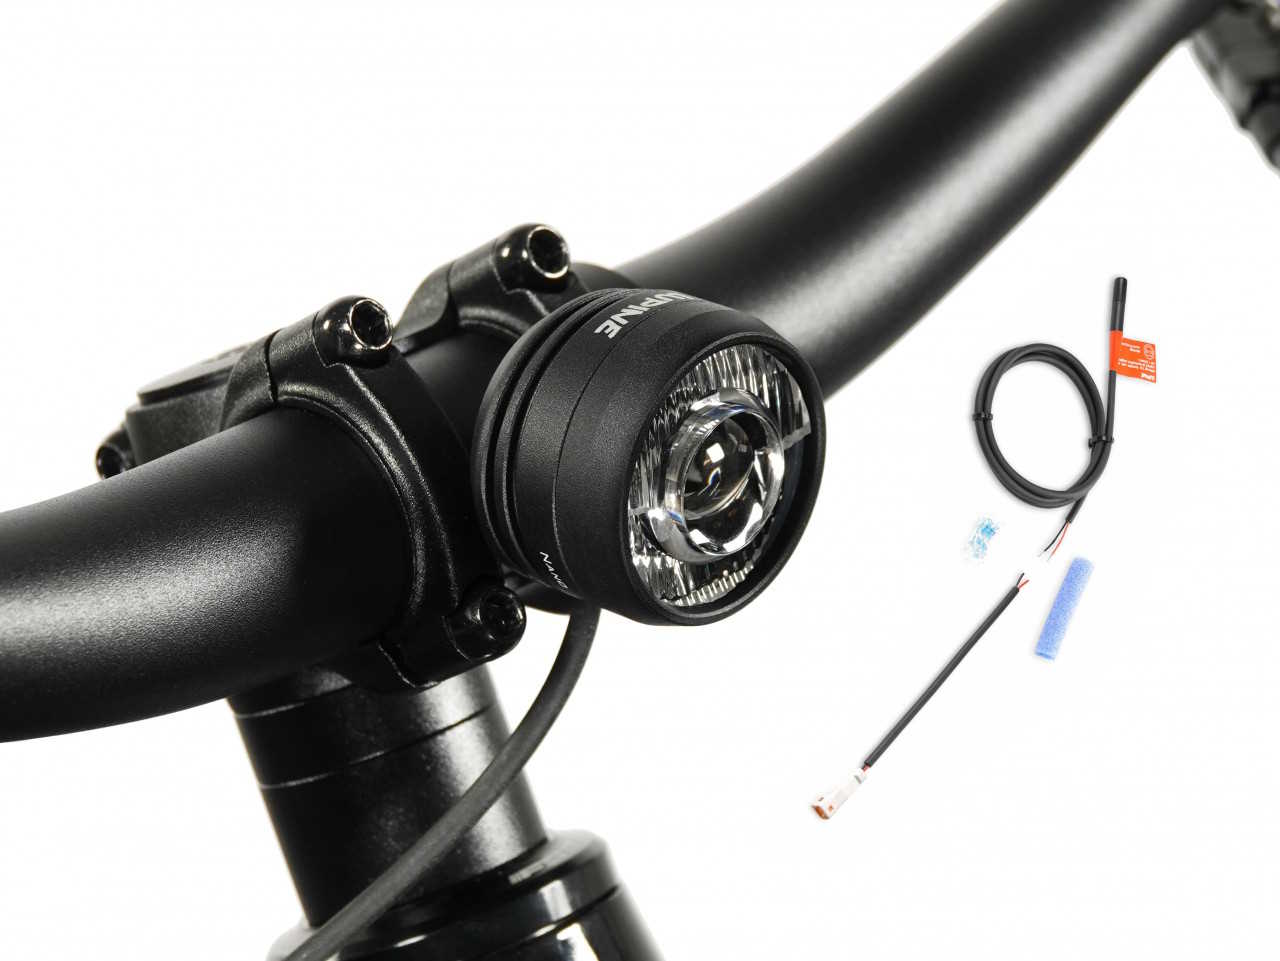 Produktbild von Lupine SL Nano für E-Bikes mit Giant Motor, E-Bike Beleuchtung mit 1000 Lumen Fernlicht, Lenkerhalter 35mm + Bluetooth Fernbedienung